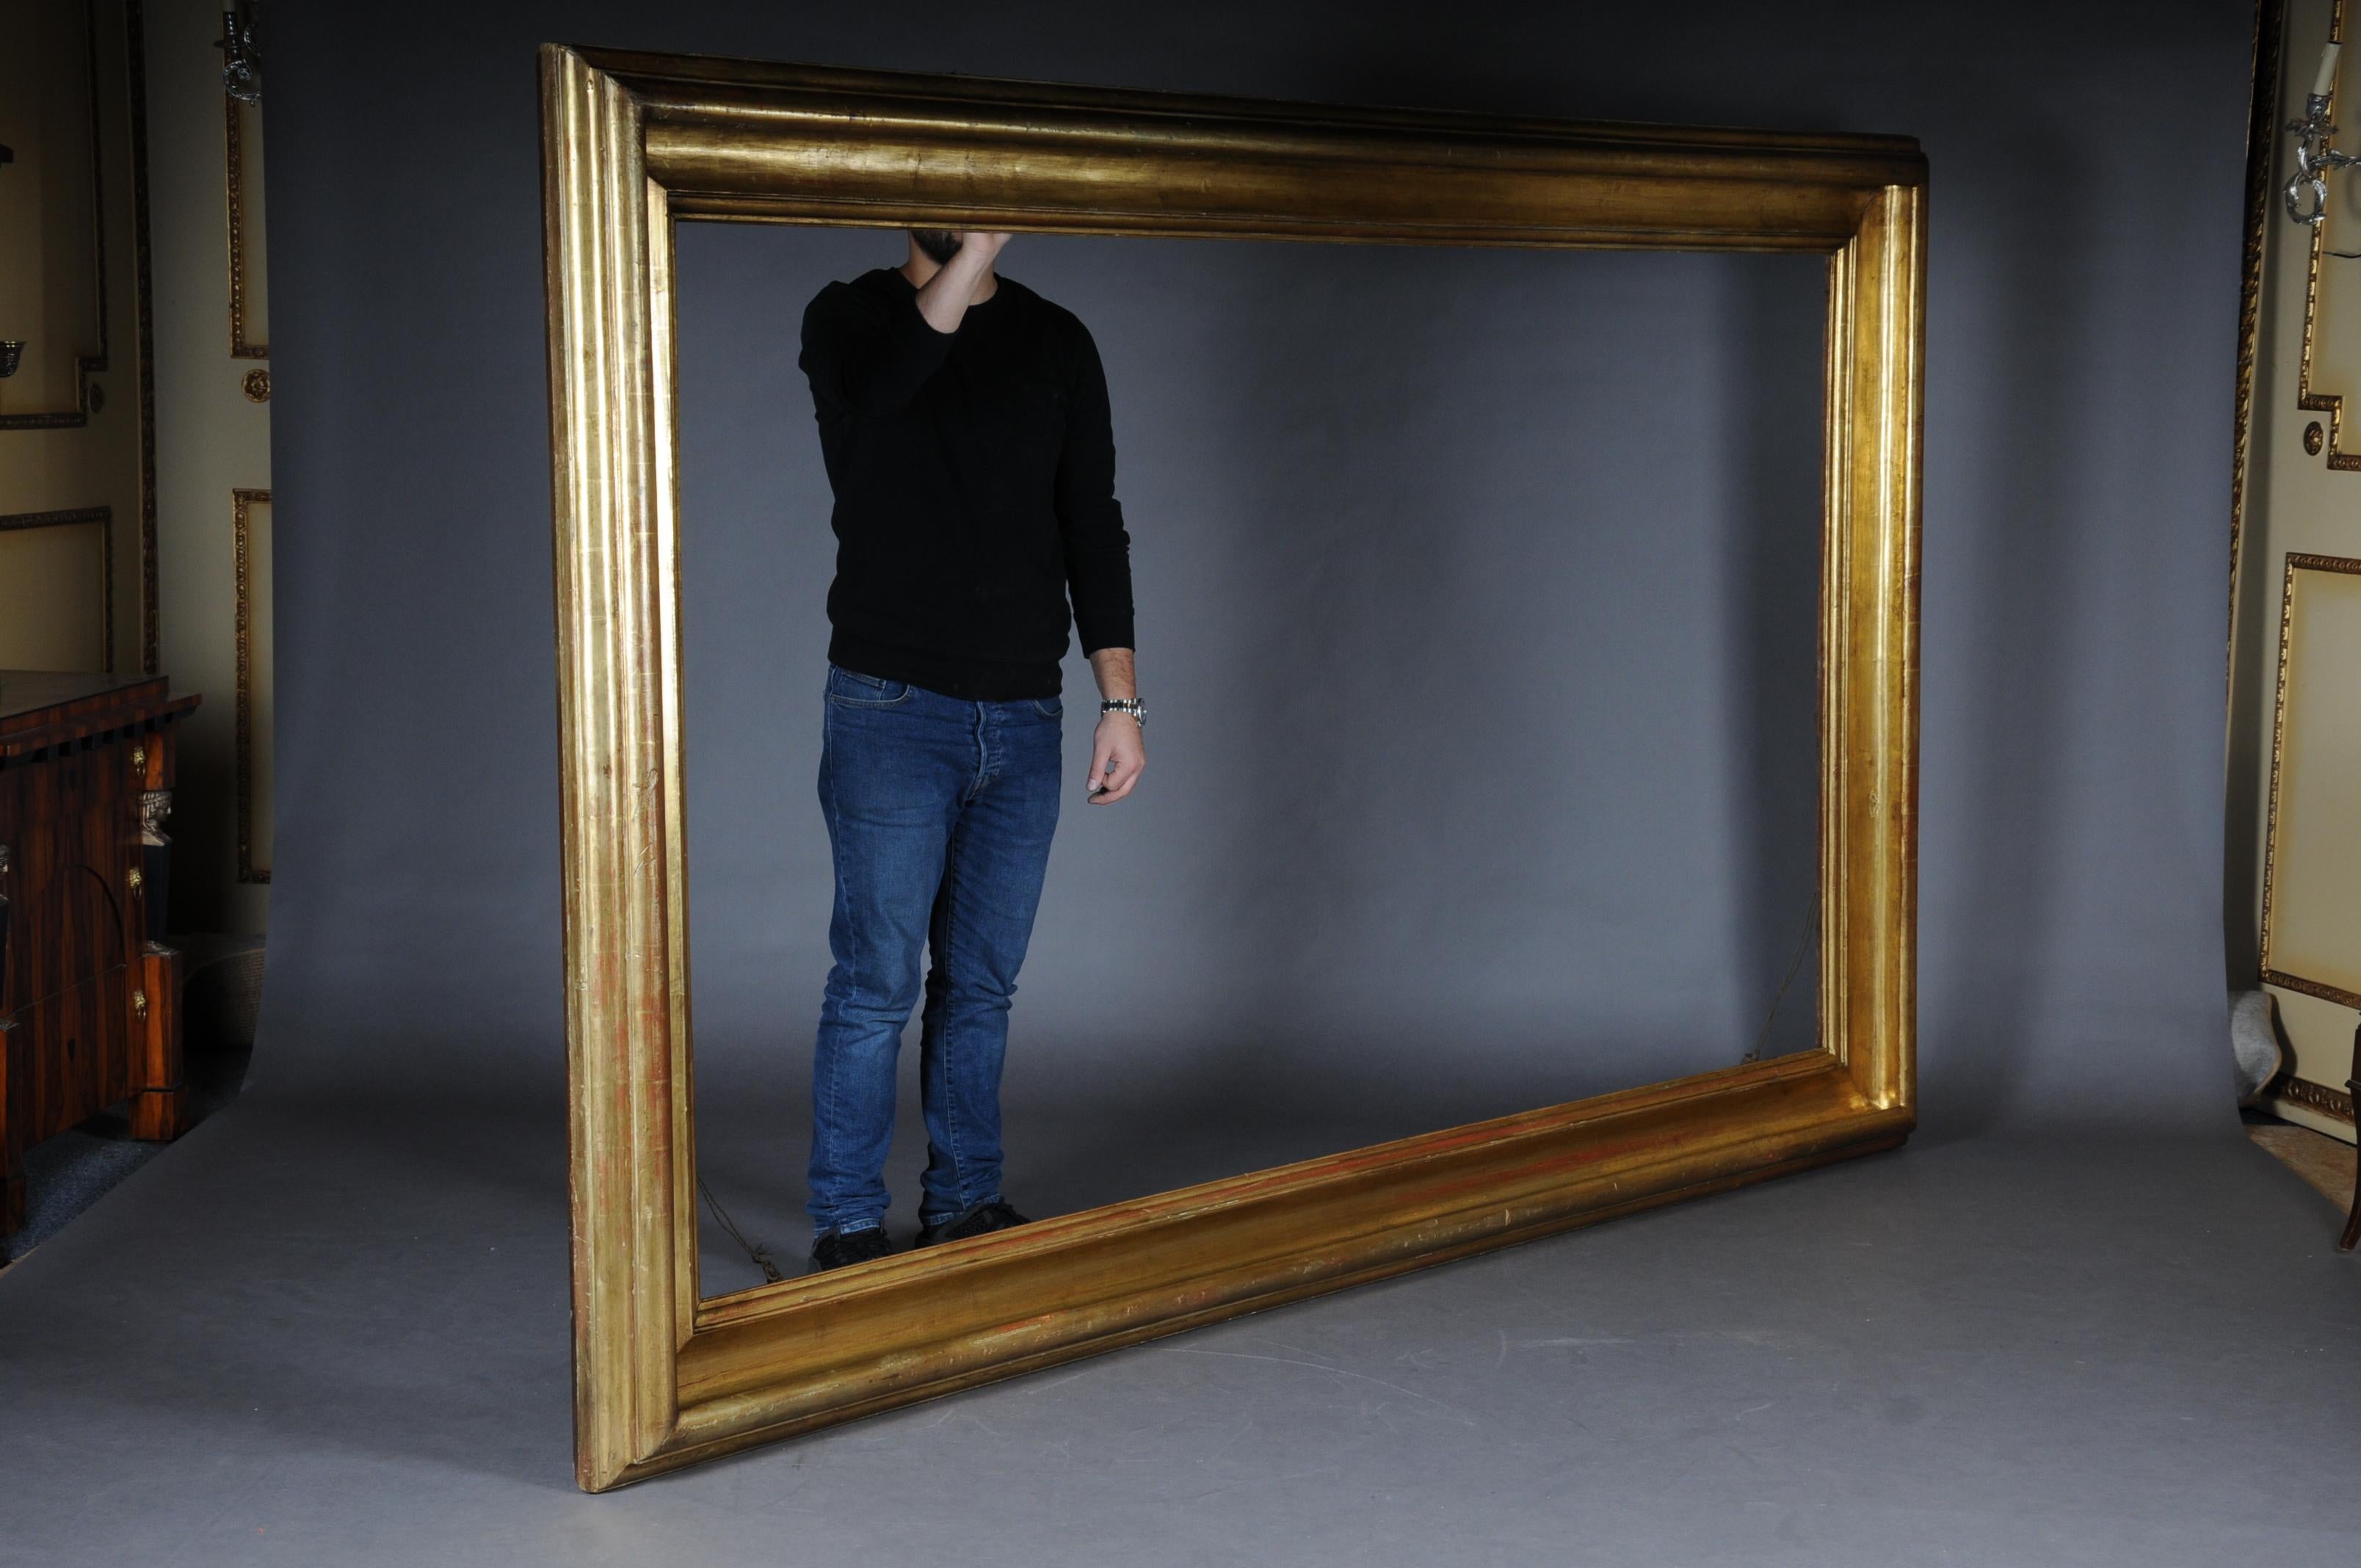 Cadre de miroir / cadre de photo en feuille d'or monumentale, vers 1850.

Cadre profilé à plusieurs niveaux en bois massif et feuille d'or véritable.
 
(M-40).